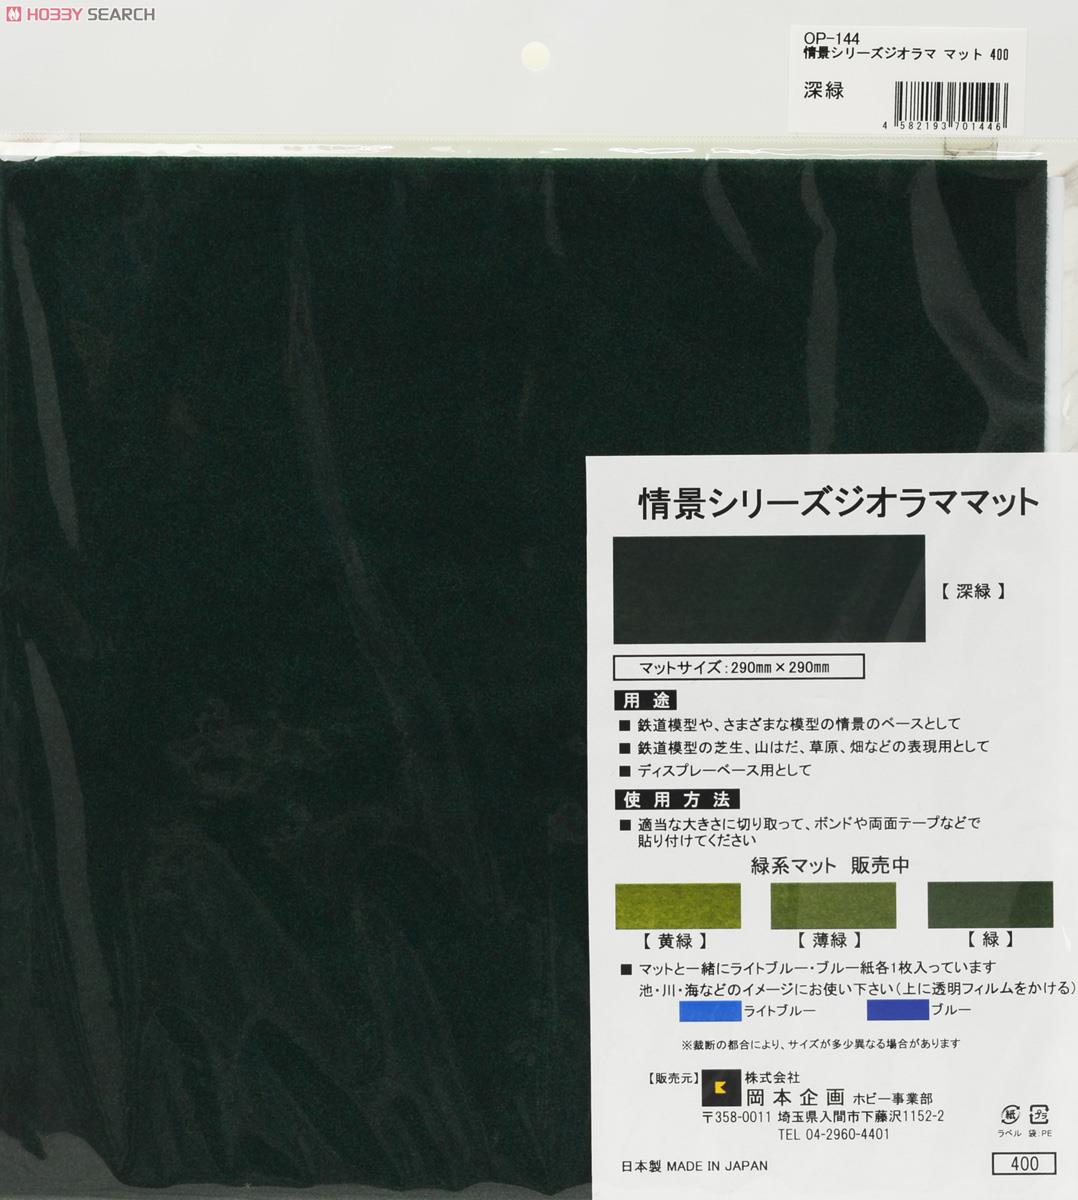 ジオラママット 深緑 (290mm×290mm) (鉄道模型) 商品画像1